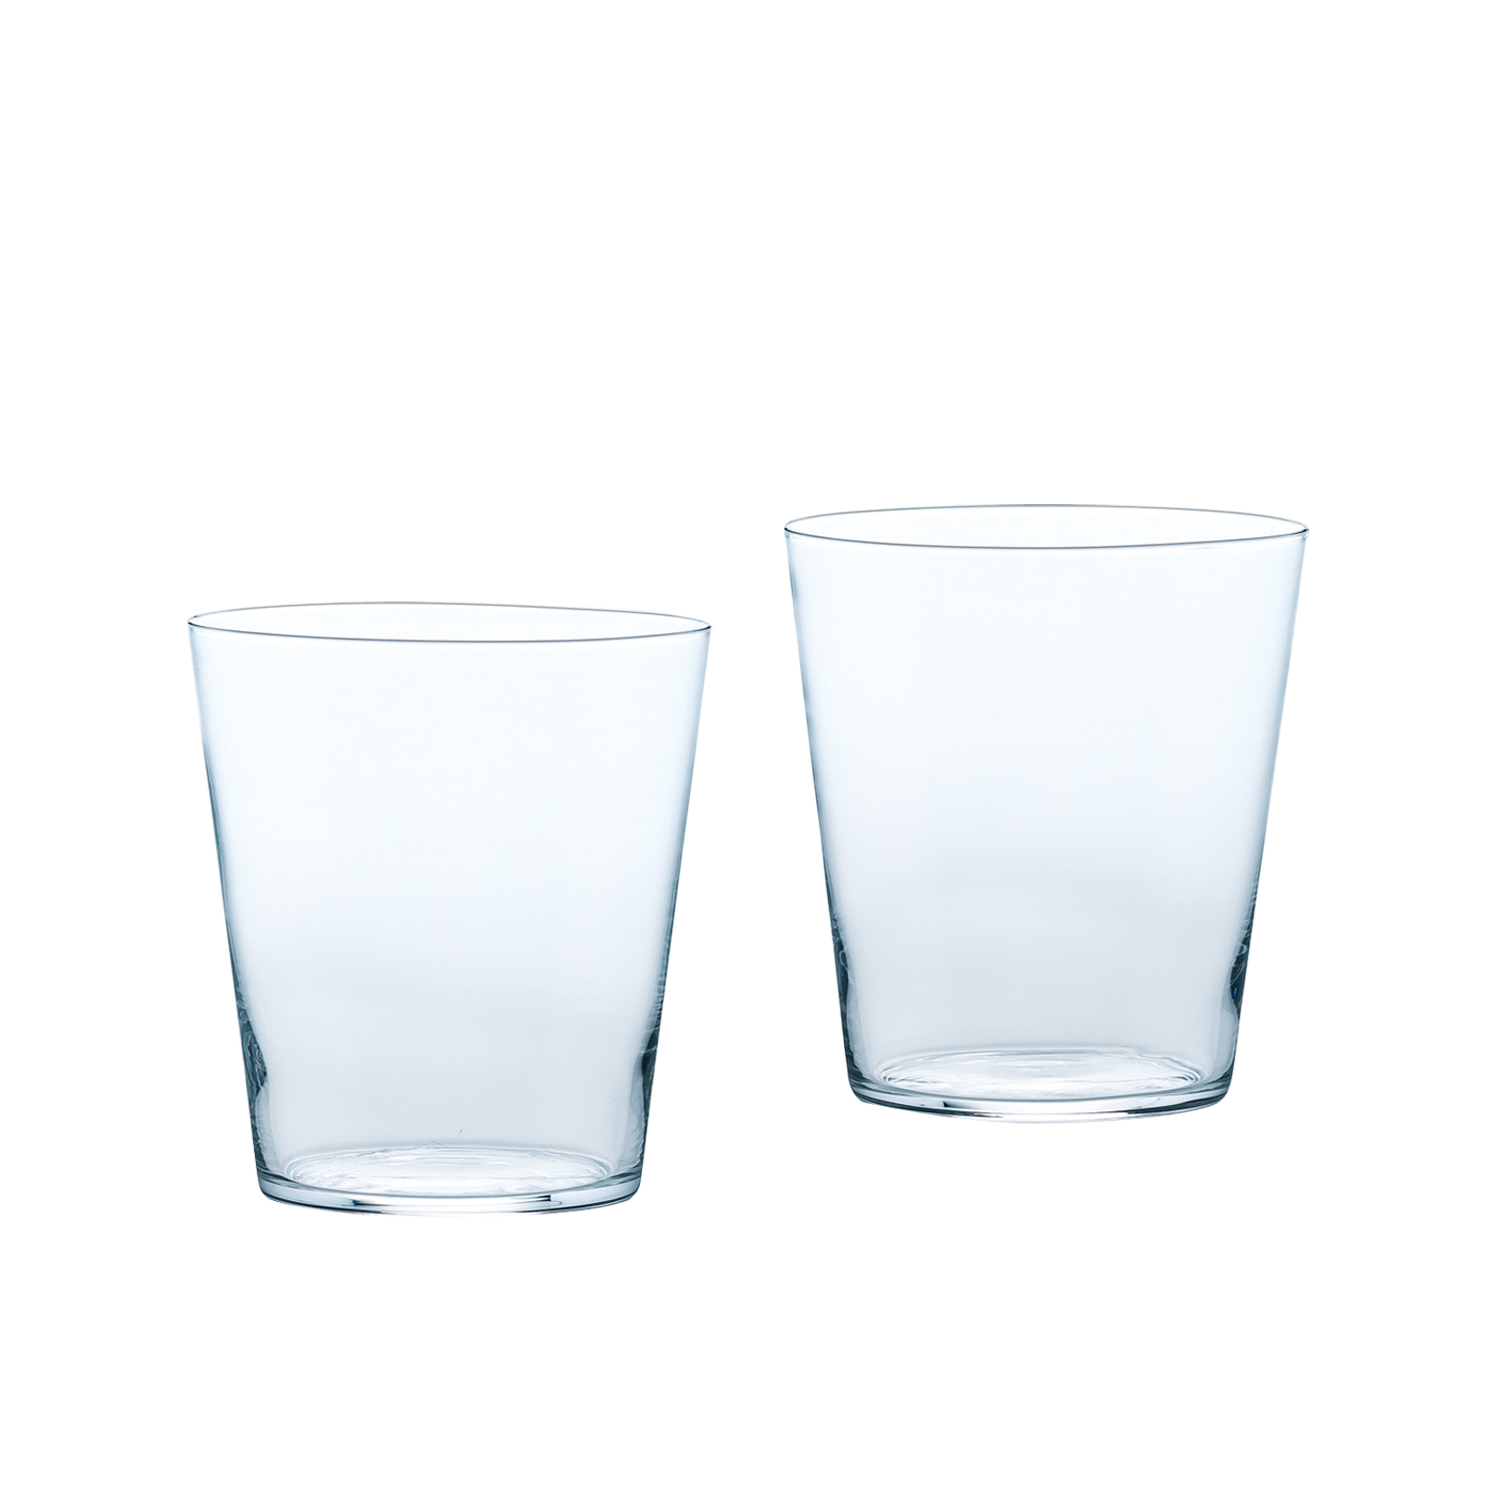 ライトブラウン/ブラック 東洋佐々木ガラス オンザロックグラス 薄氷 うすらい 日本製 60セット (ケース販売) 食洗機対応 305ml B- 21109CS 通販